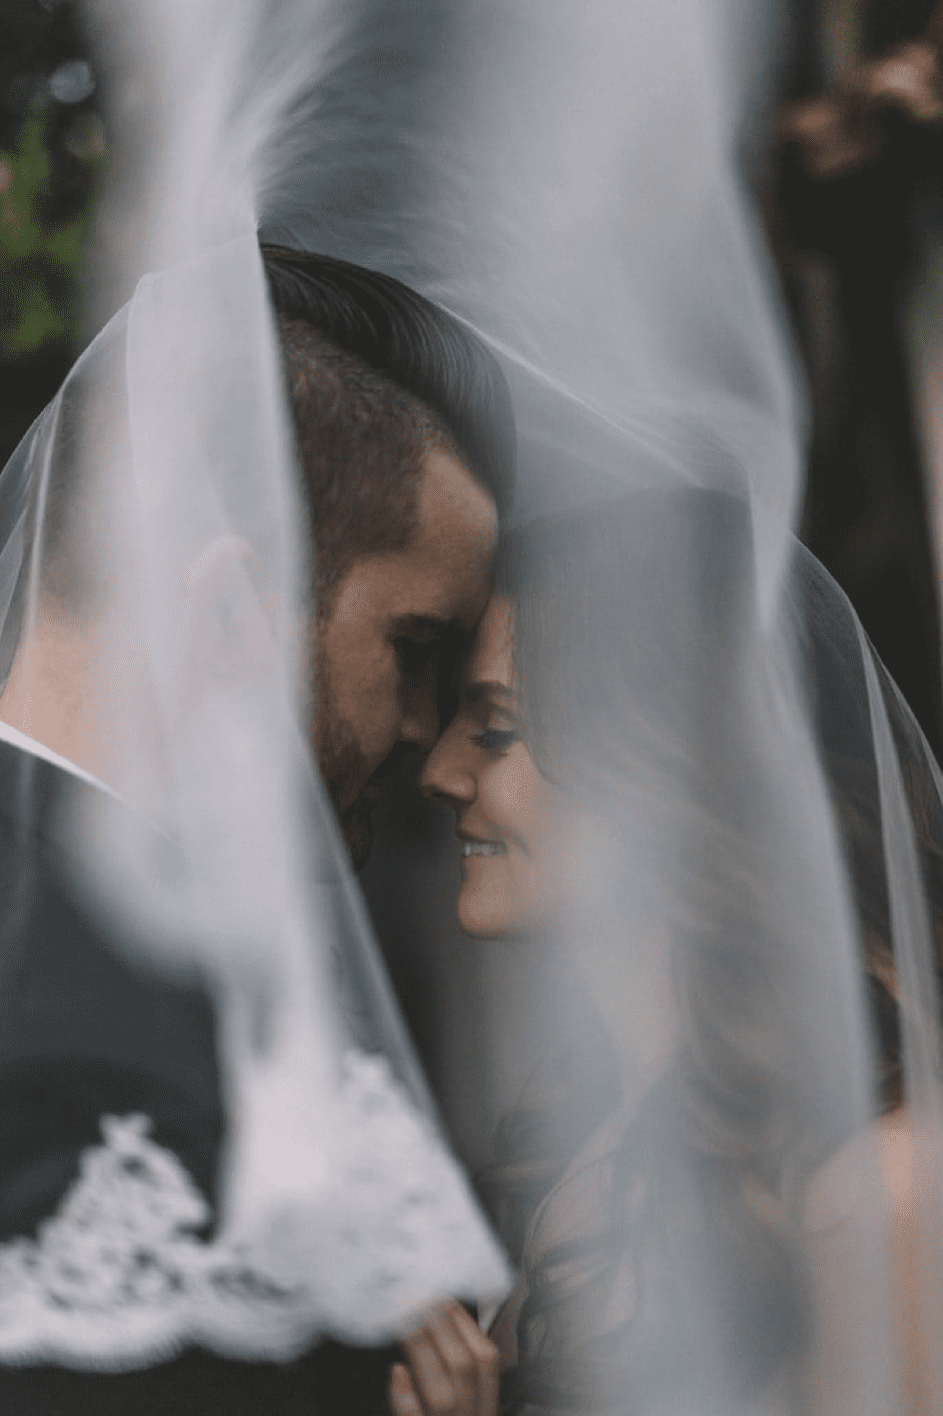 Kajas Papa heiratete die “flauschige” Frau. | Quelle: Unsplash